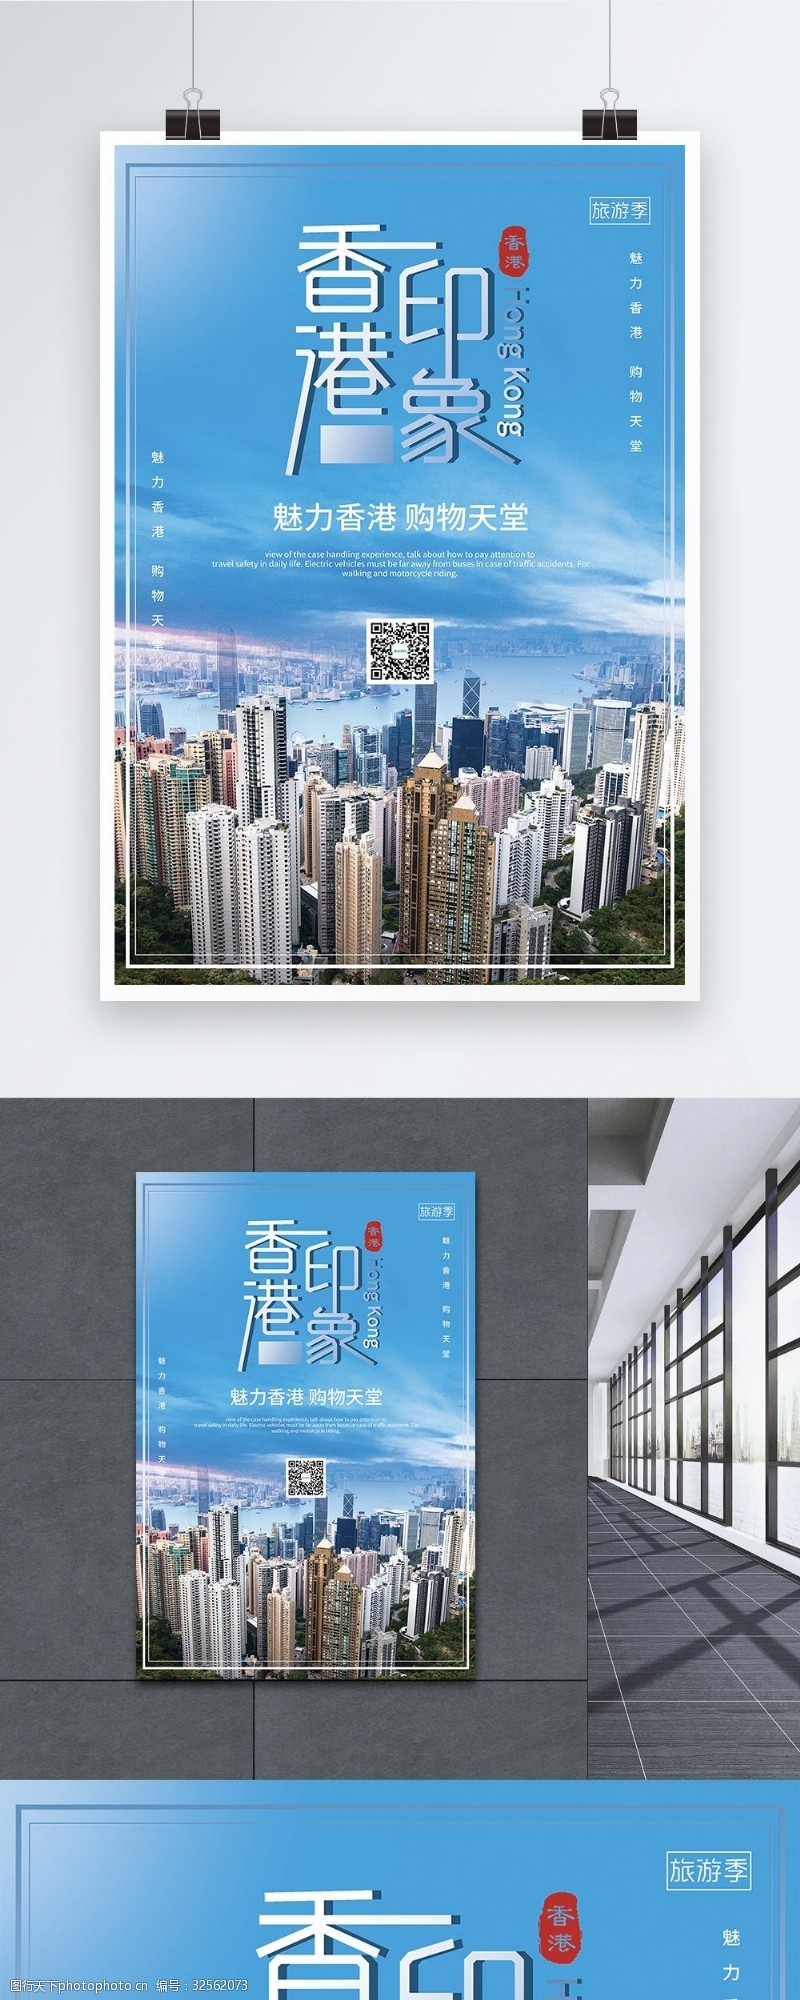 自助购物香港旅行香港印象创意海报